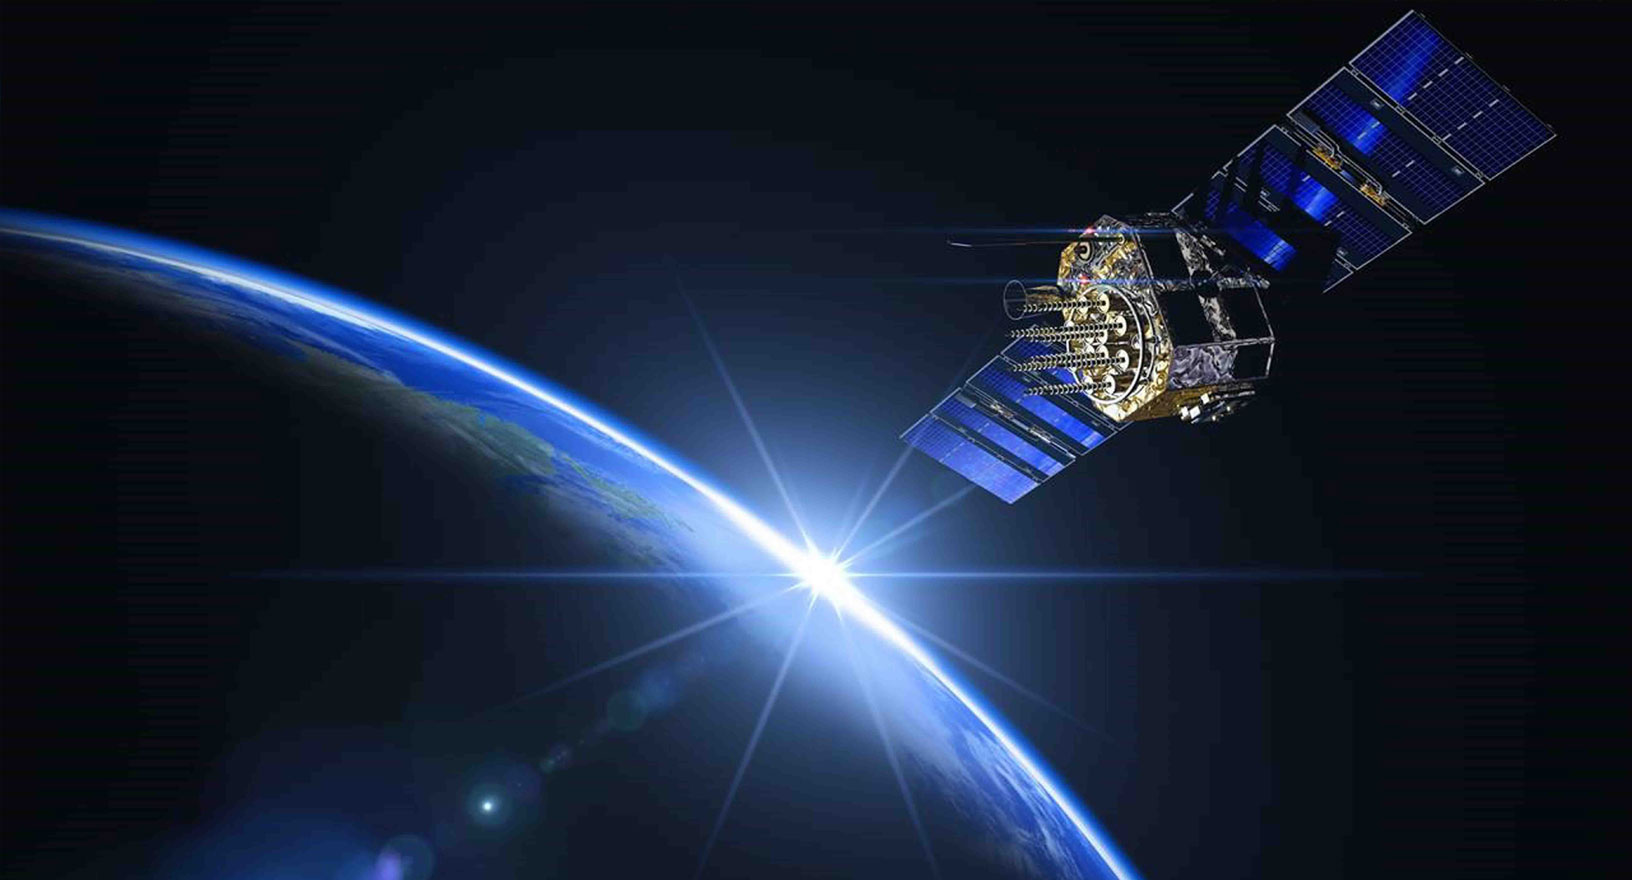 Système de positionnement par satellites GNSS photographié en orbite autour de la Terre.